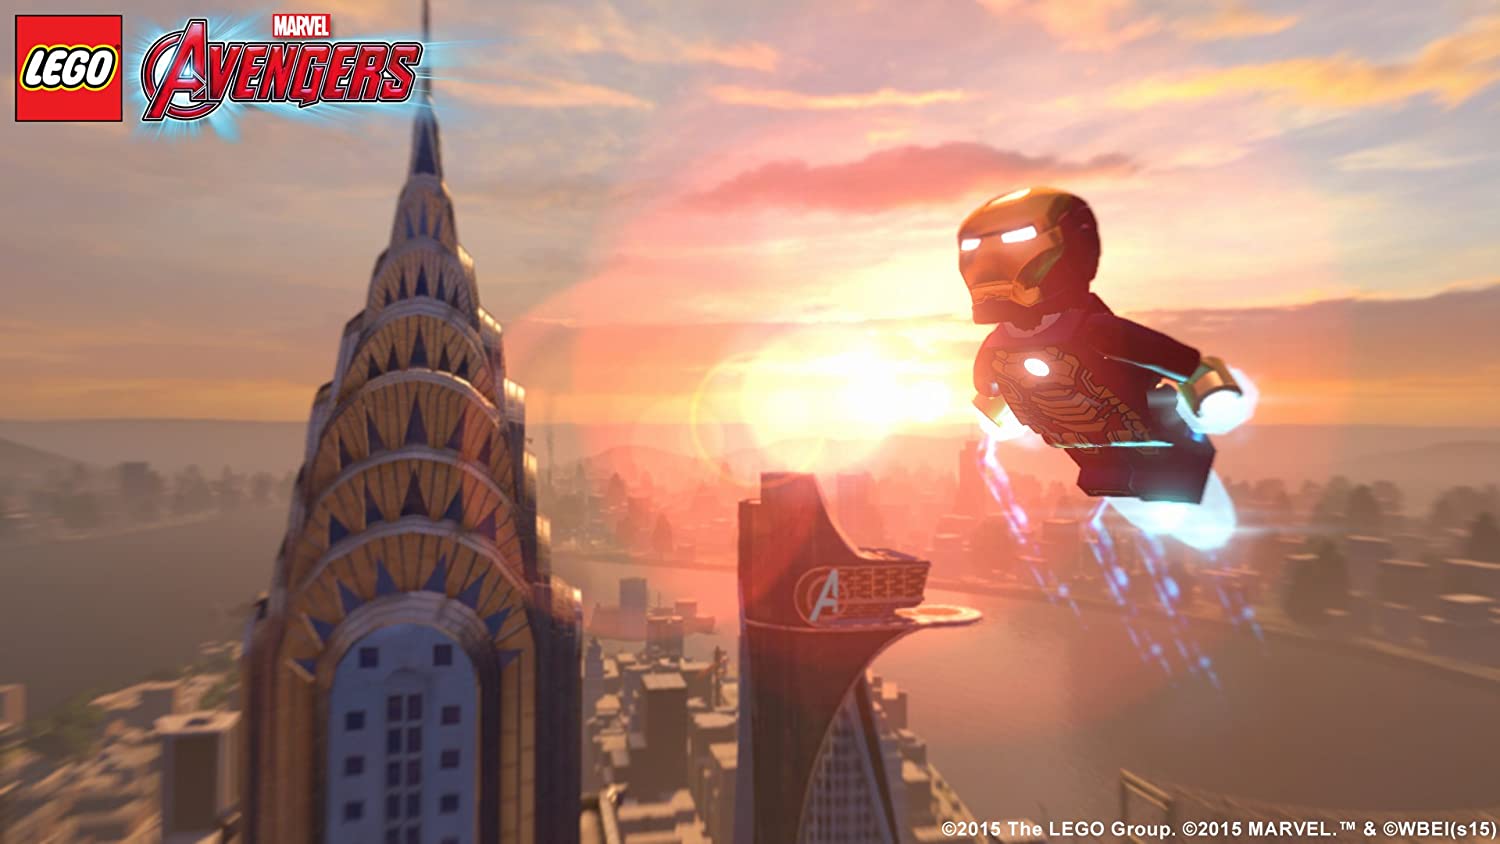 [PS4] LEGO Marvel Avengers